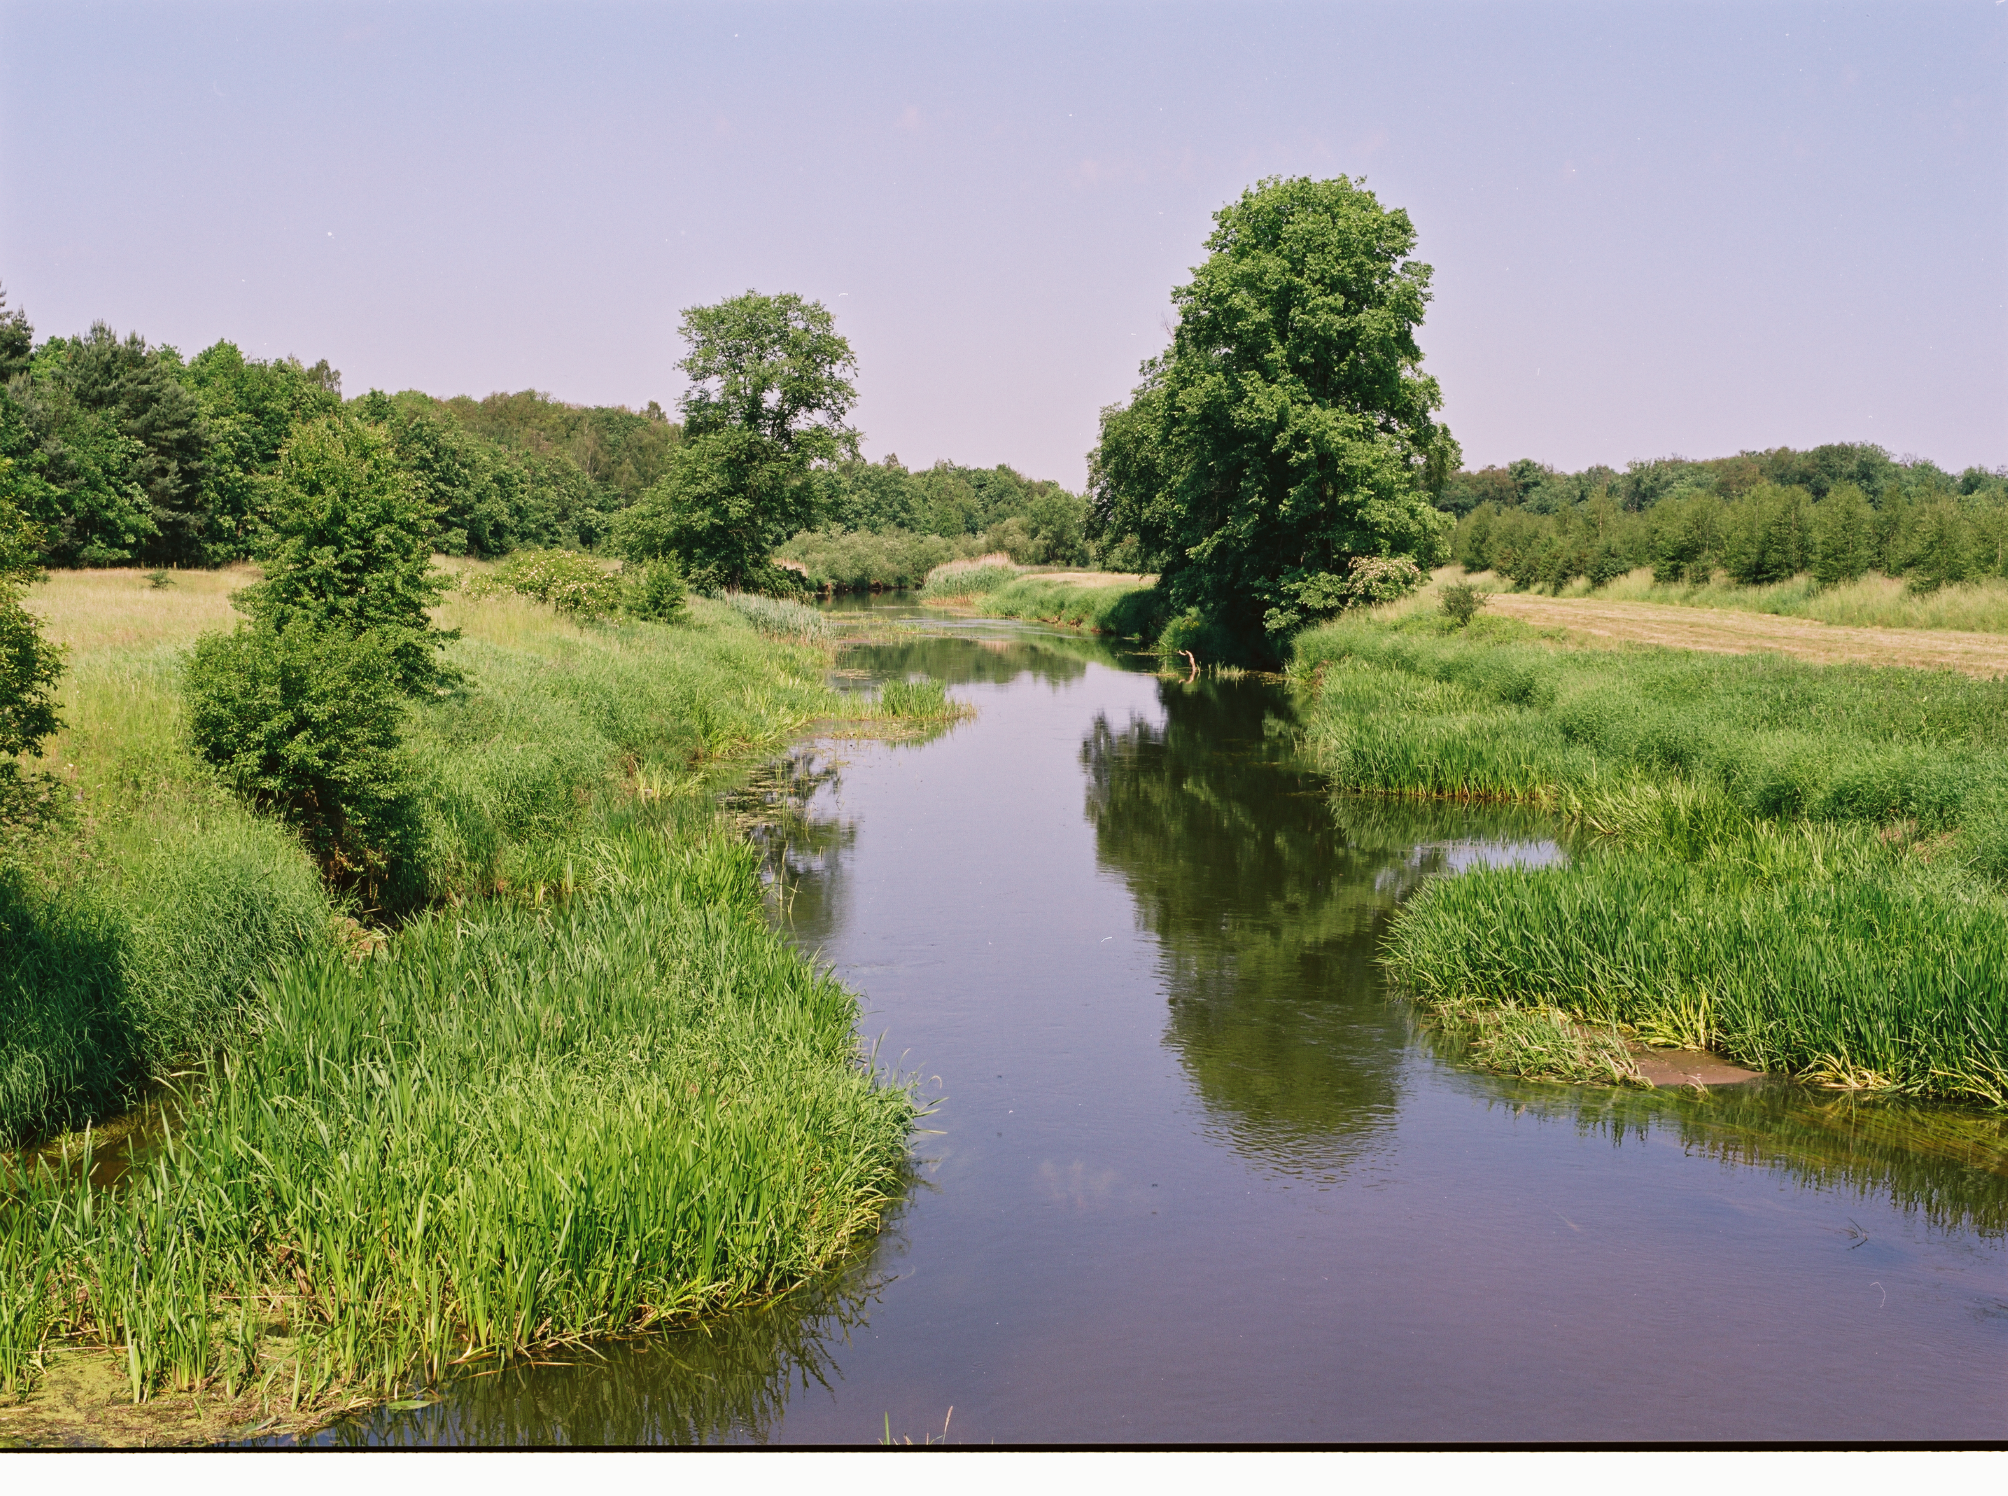 Zdjęcie przedstawia rzekę płynącą wśród łąk i lasów. Fot. Archiwum Nadleśnictwa Góra Śląska.